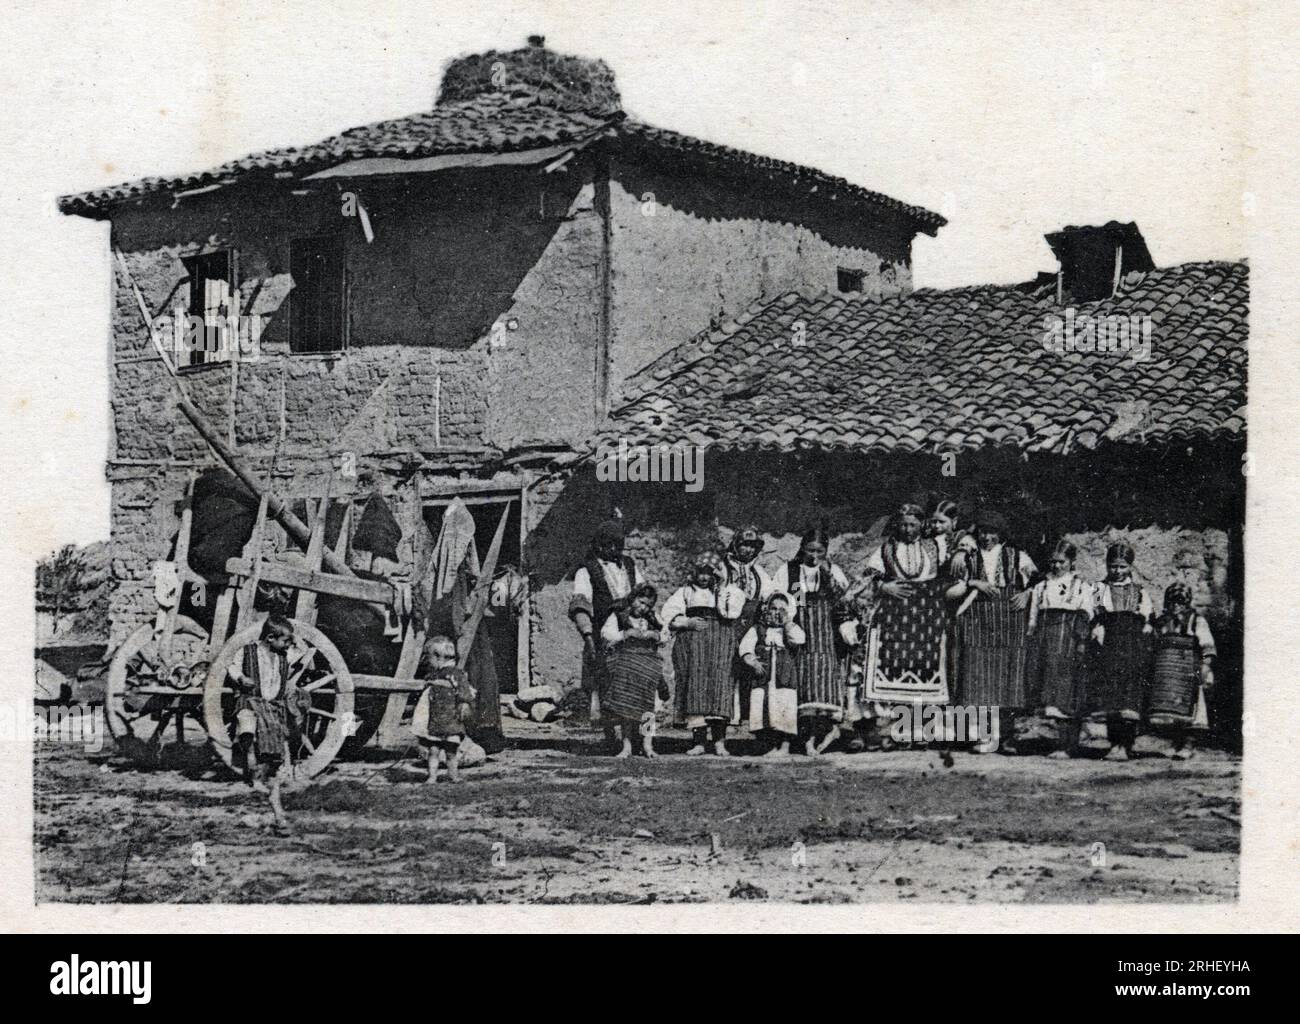 Serbie : famille de paysans devant leur maison aux environs de Monastir (Devenue Bitola en Macedoine) - Carte postale 1914-1918 Stockfoto